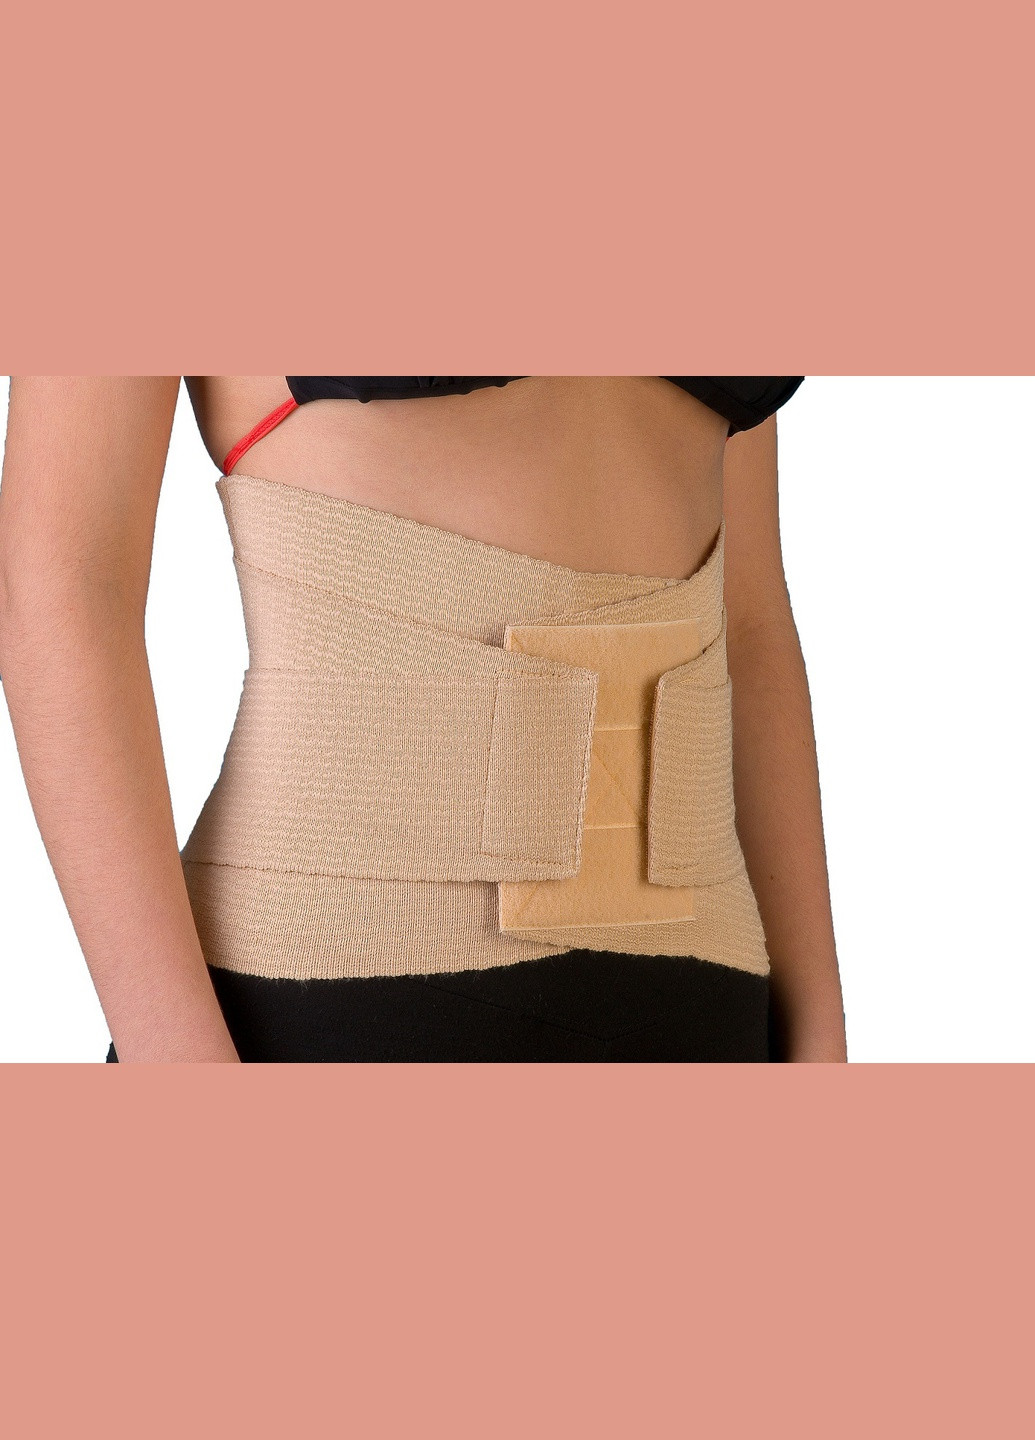 Пояс корсет с ребрами жесткости поясничный для талии и спины утягивающий ортопедический эластичный ВIТАЛI размер № (2111) Віталі (264208297)